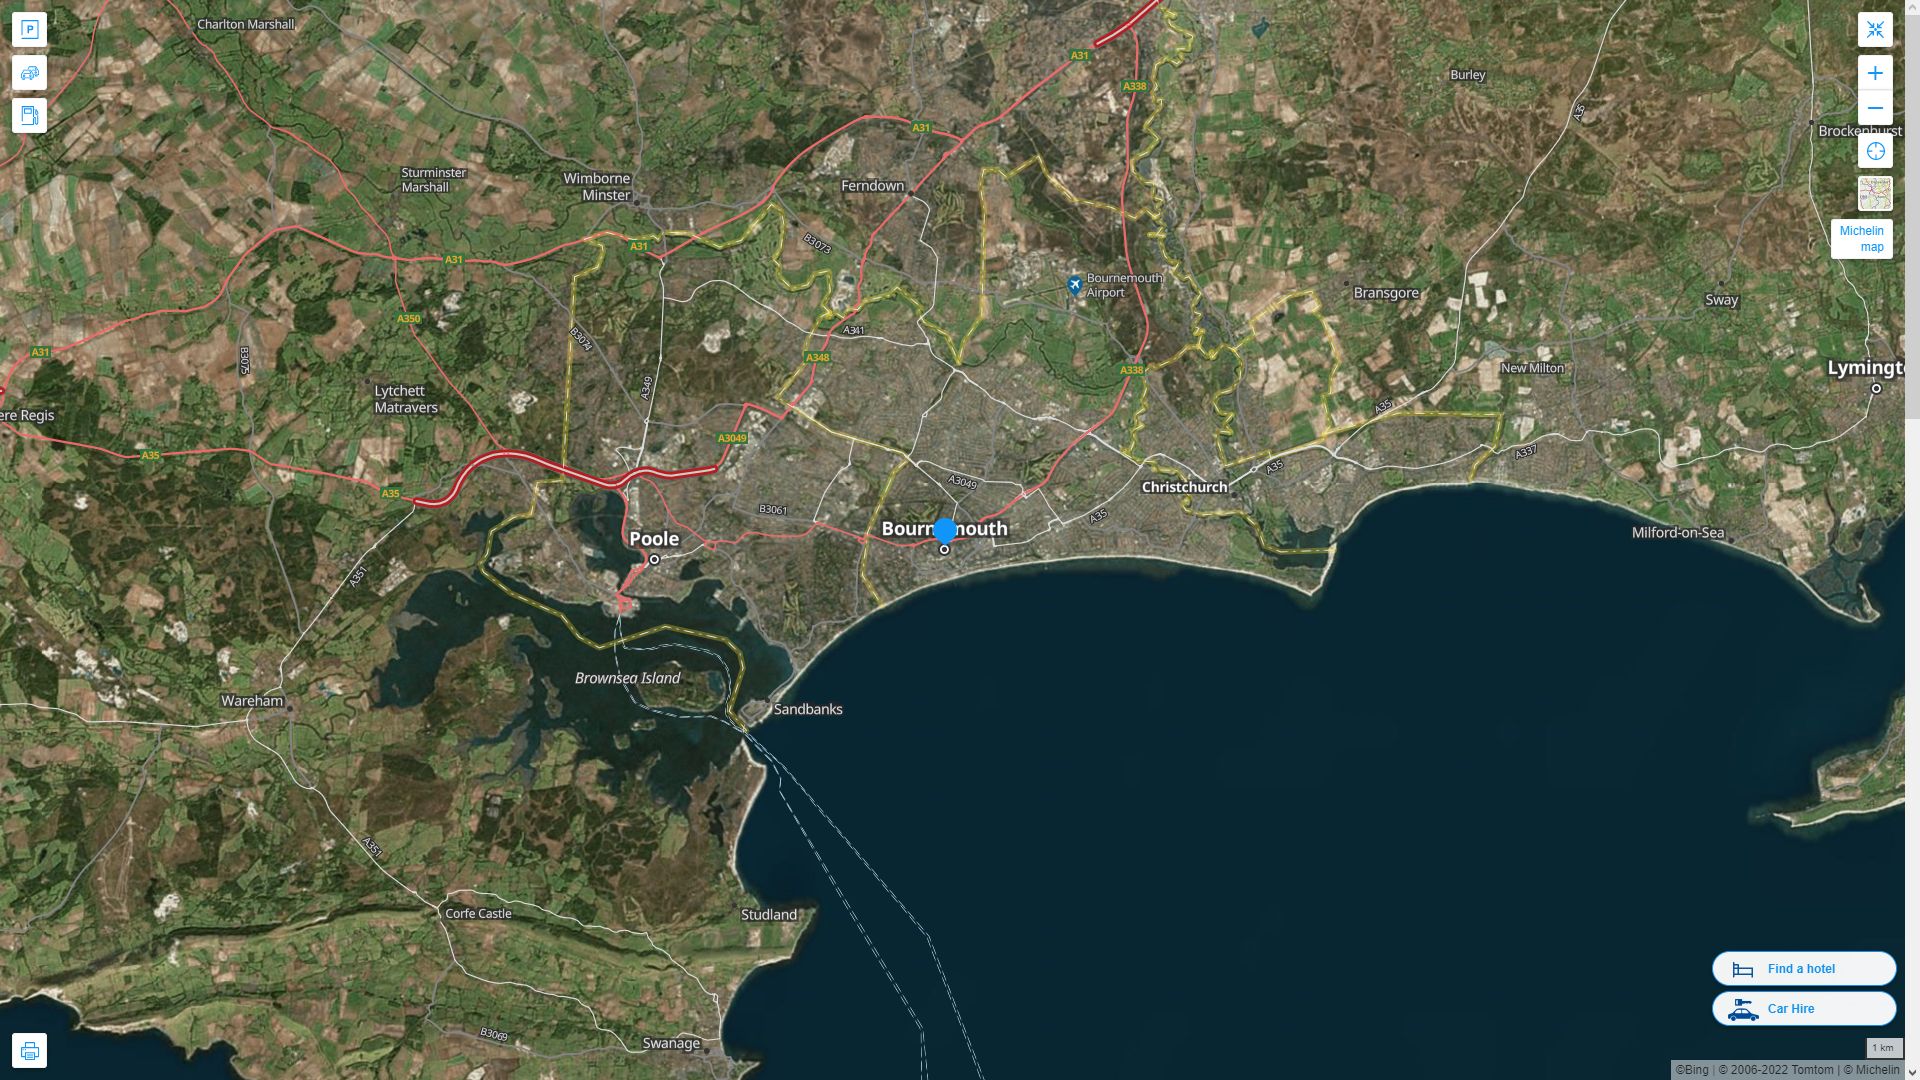 Bournemouth Royaume Uni Autoroute et carte routiere avec vue satellite